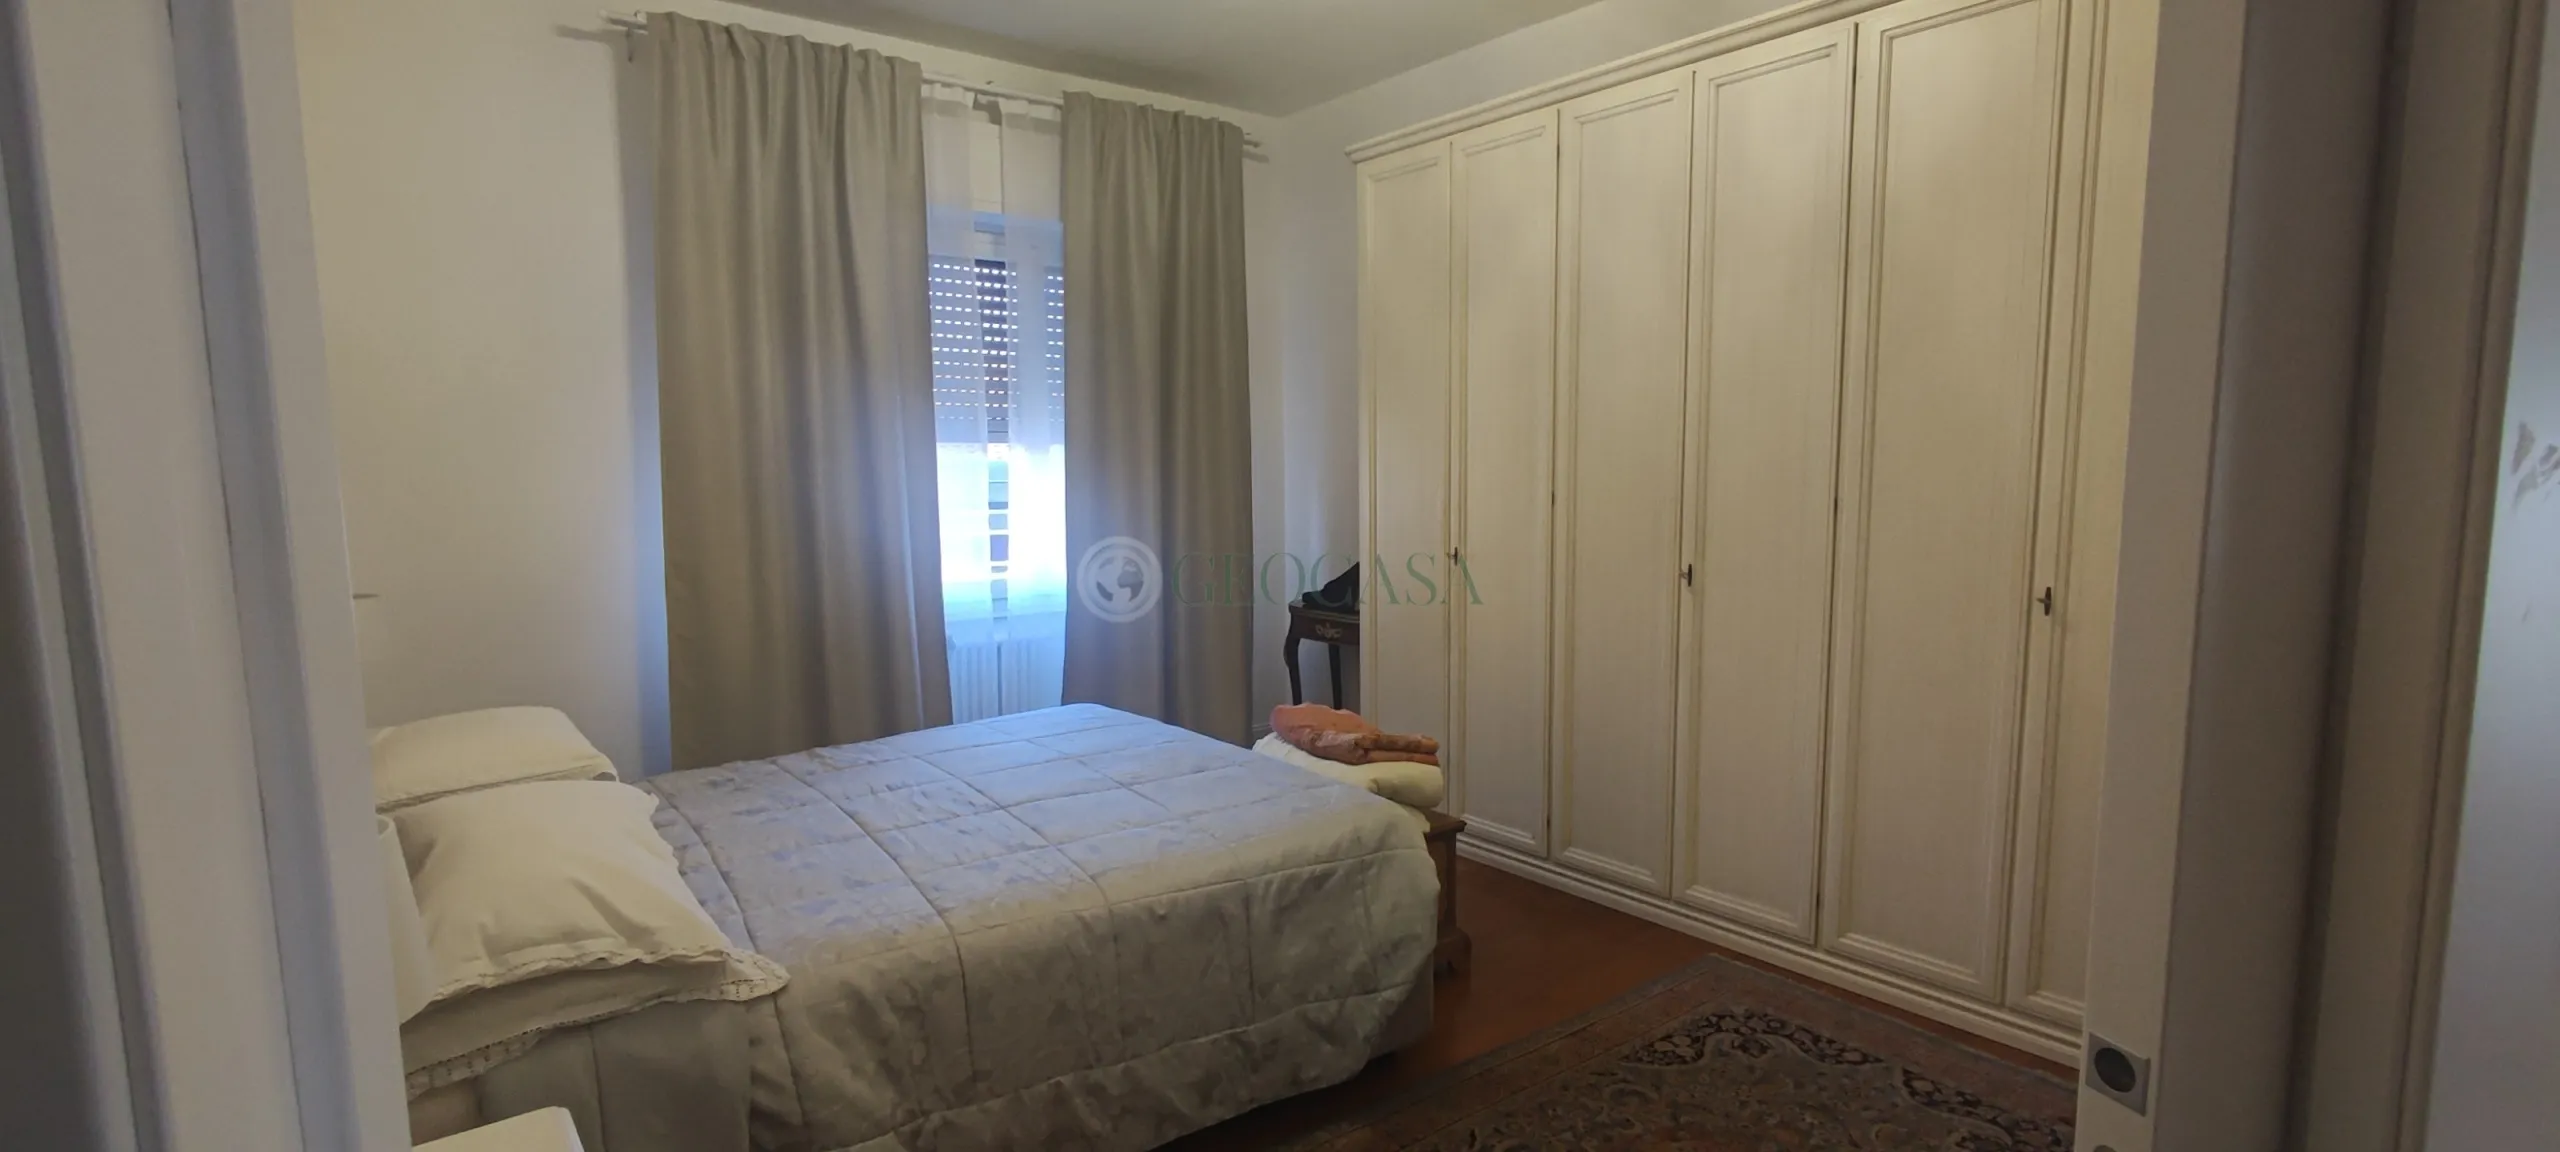 Immagine per Appartamento in vendita a Sarzana via Ronzano 24b